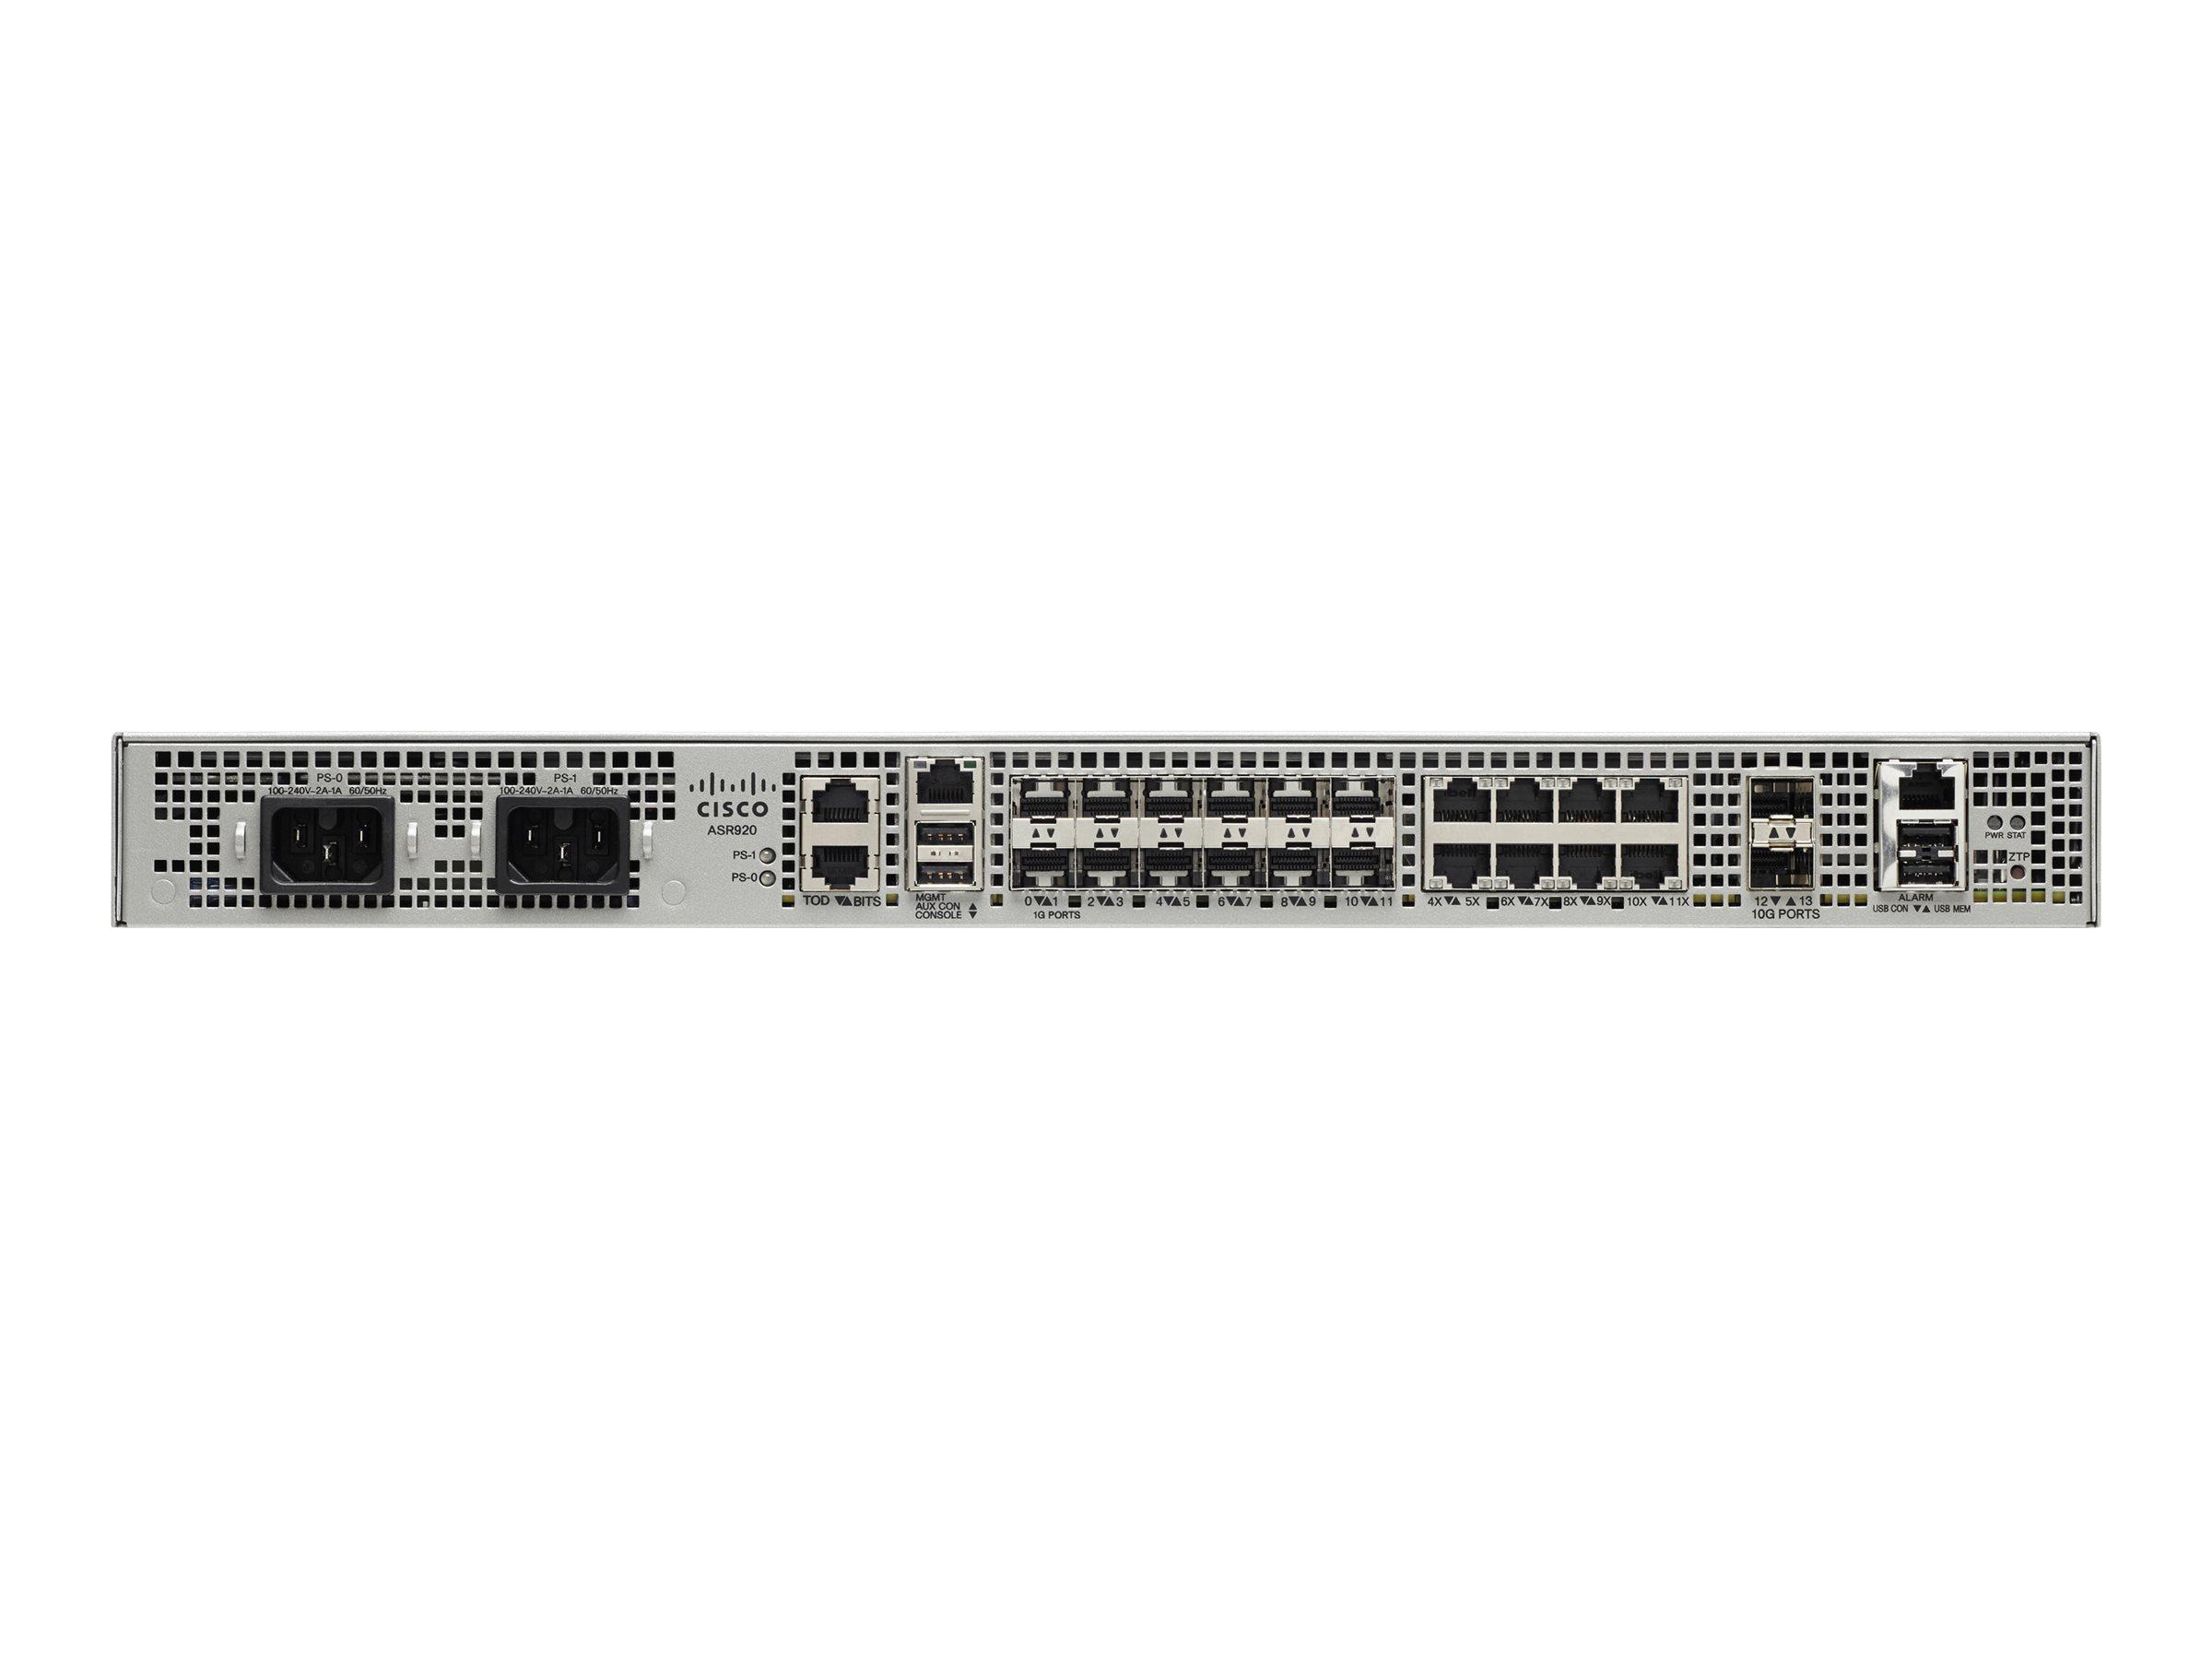 Cisco ASR 920 - - Router - - 10GbE - Luftstrom von vorne nach hinten - an Rack montierbar